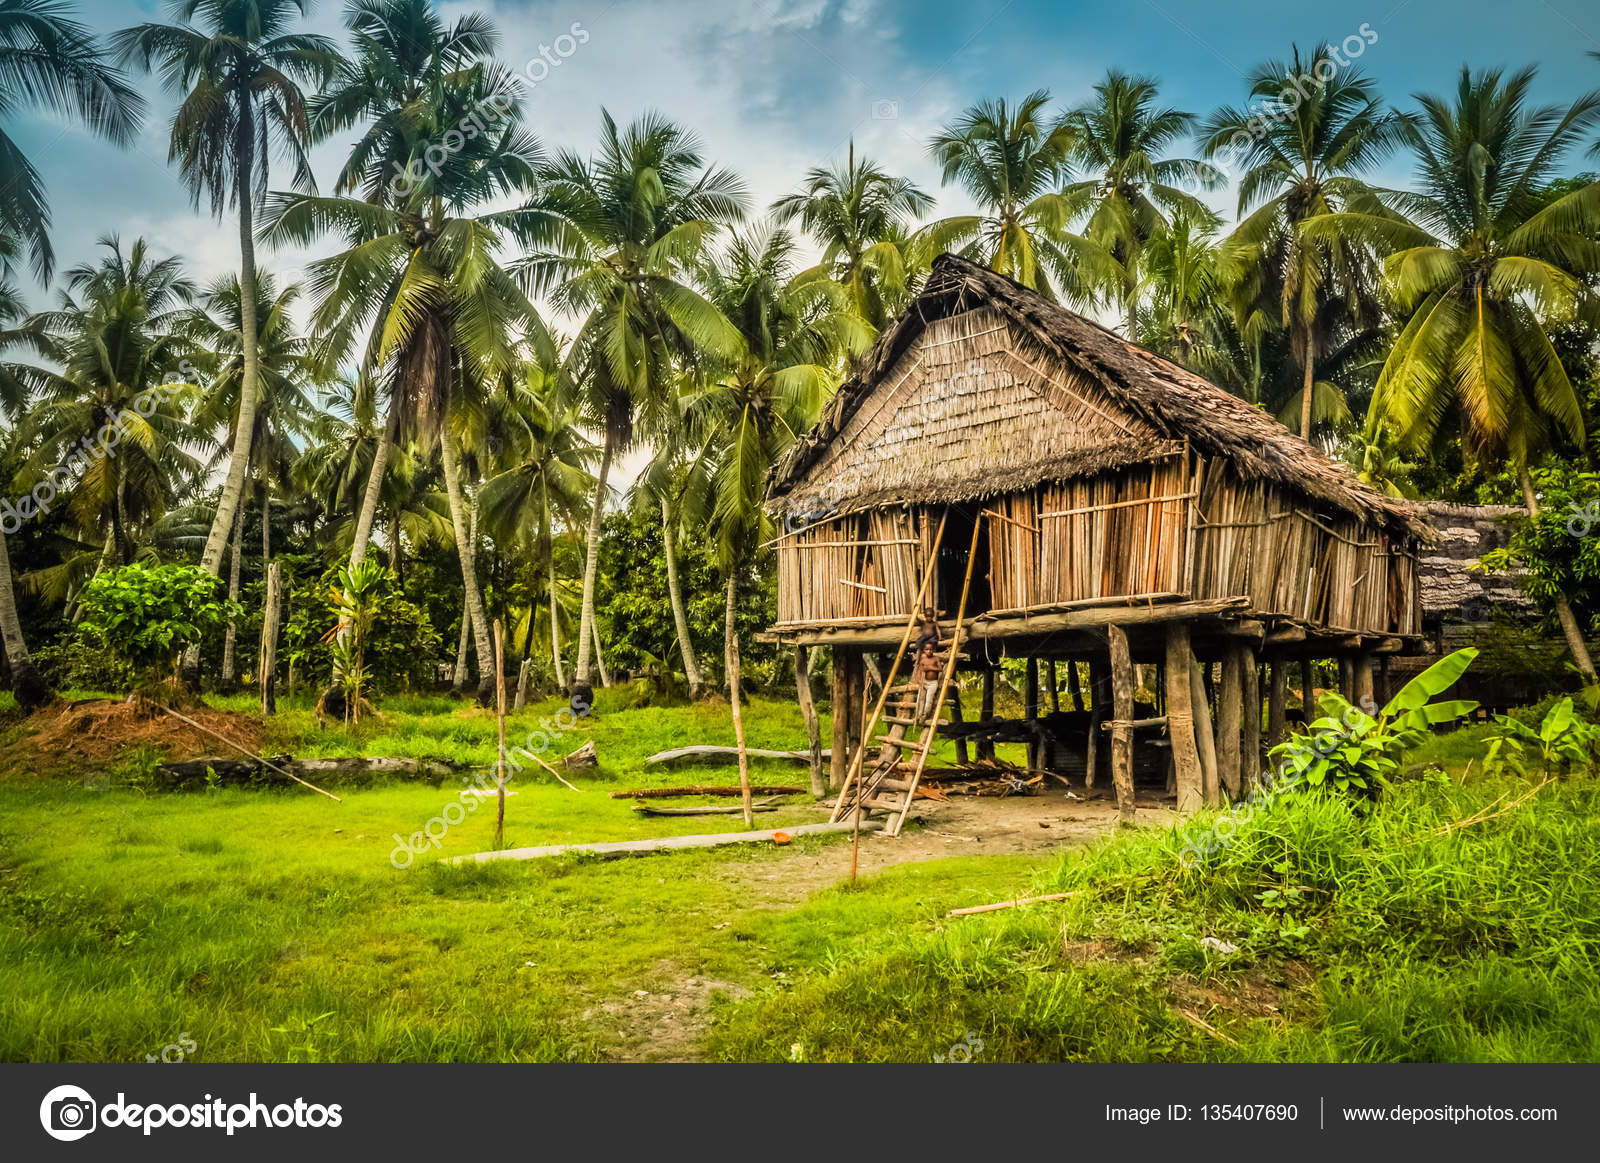  Maison  en bambou  en Palembe  Photographie MichalKnitl 